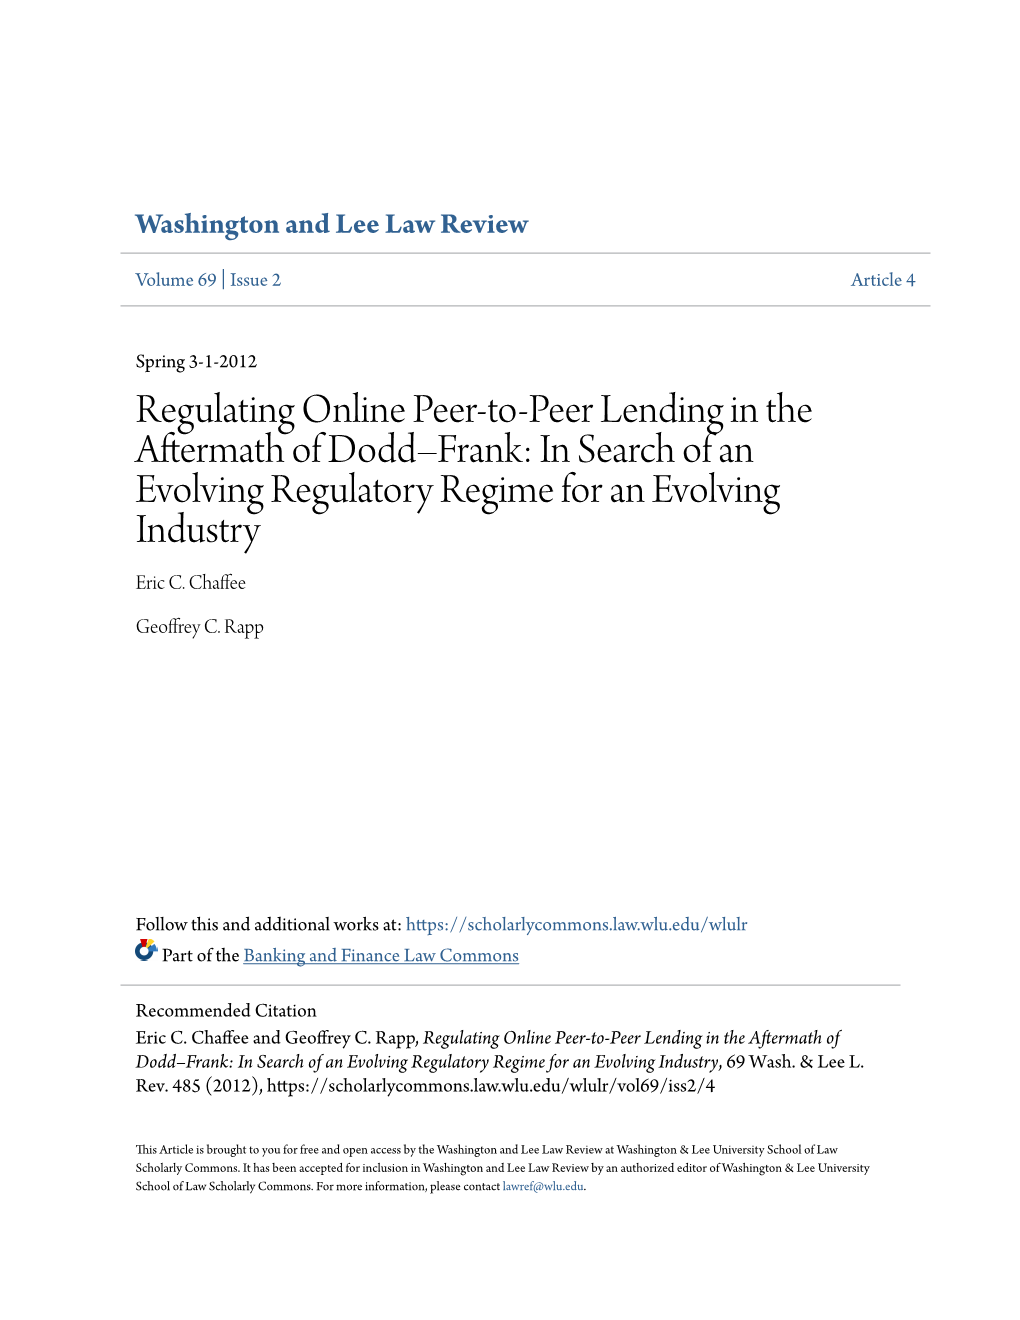 Regulating Online Peer-To-Peer Lending in the Aftermath of Doddâ